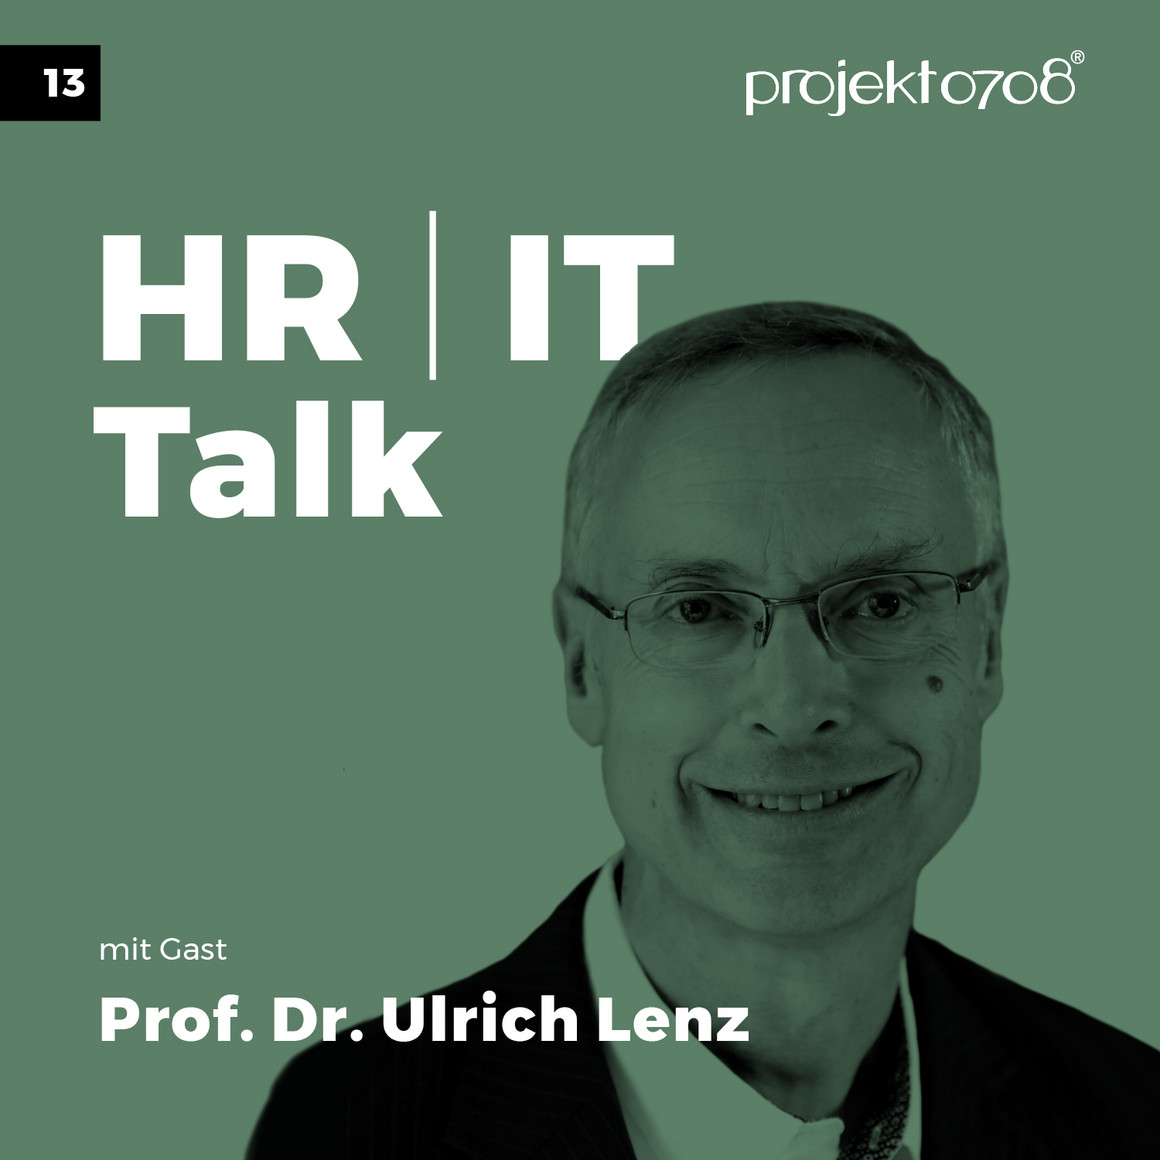 Prof. Dr. Ulrich Lenz